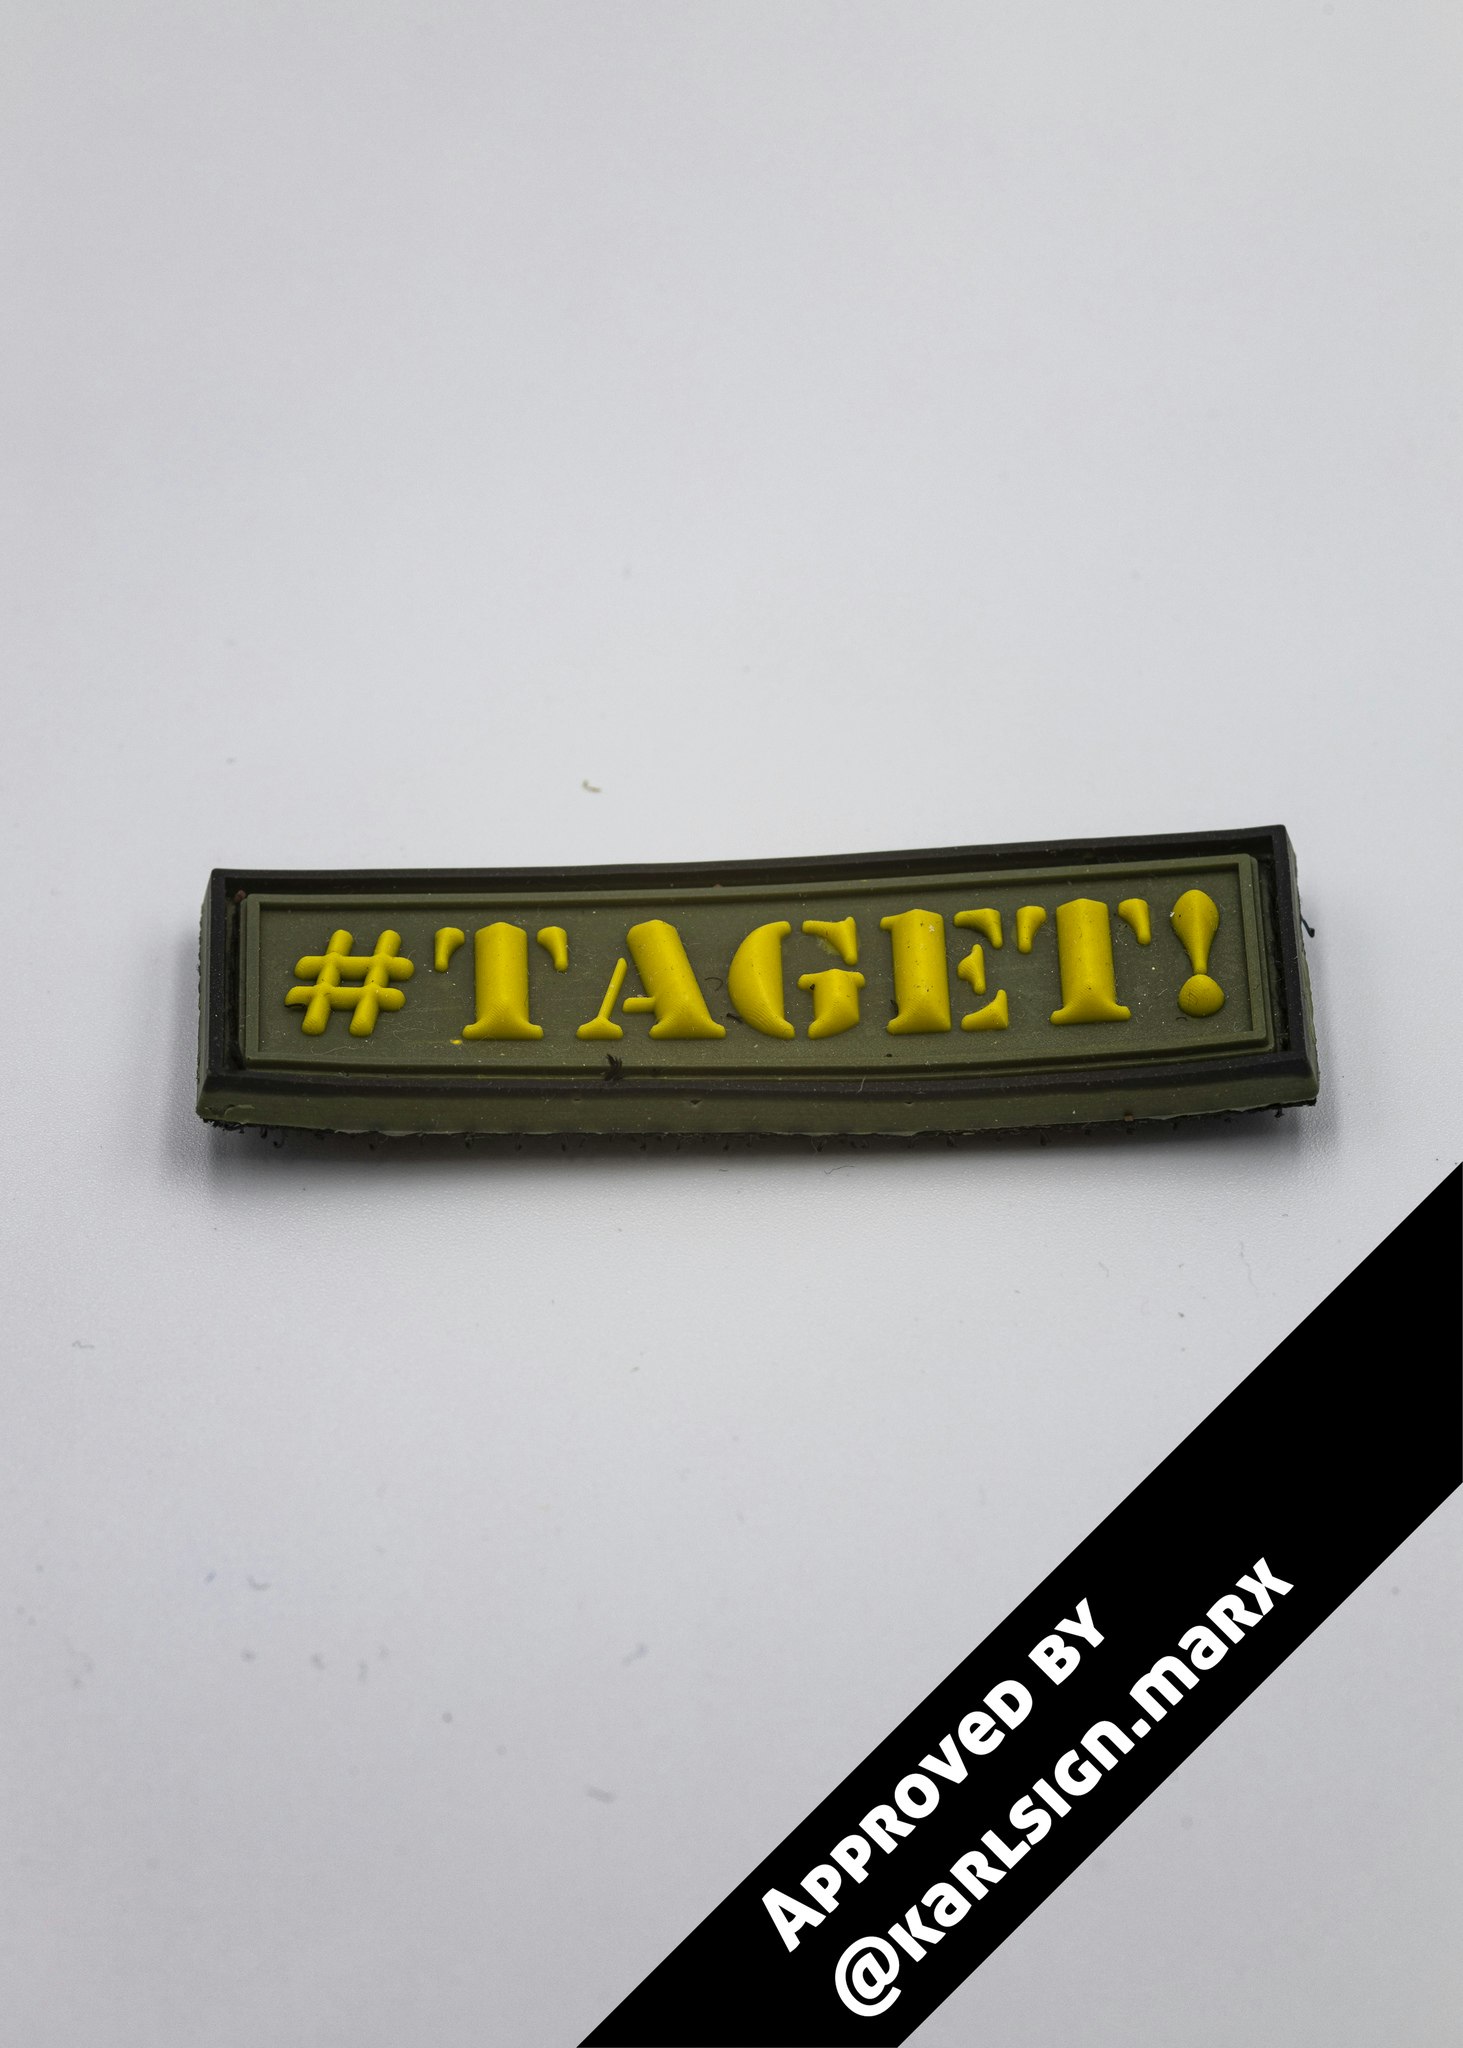 "#TAGET!" - Patchen som är ett måste!